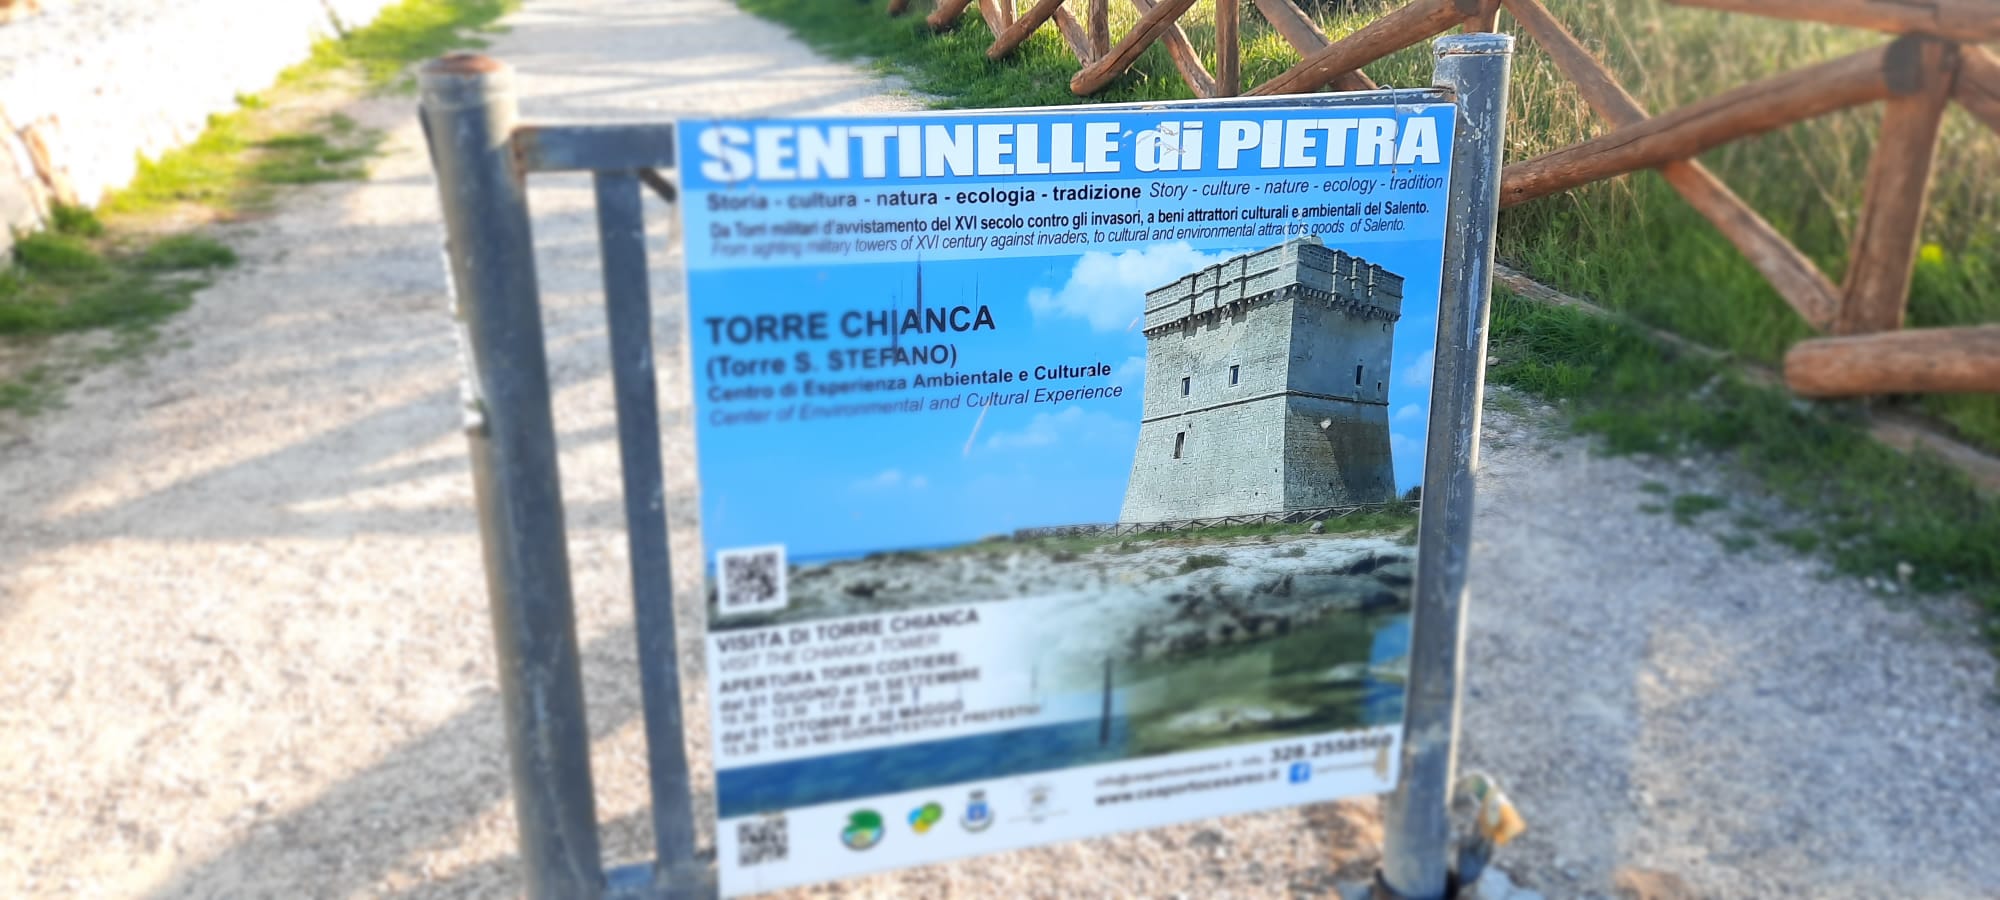 Salentissimo.it: Torre Chianca di Porto Cesareo -  Porto Cesareo, Salento rannad